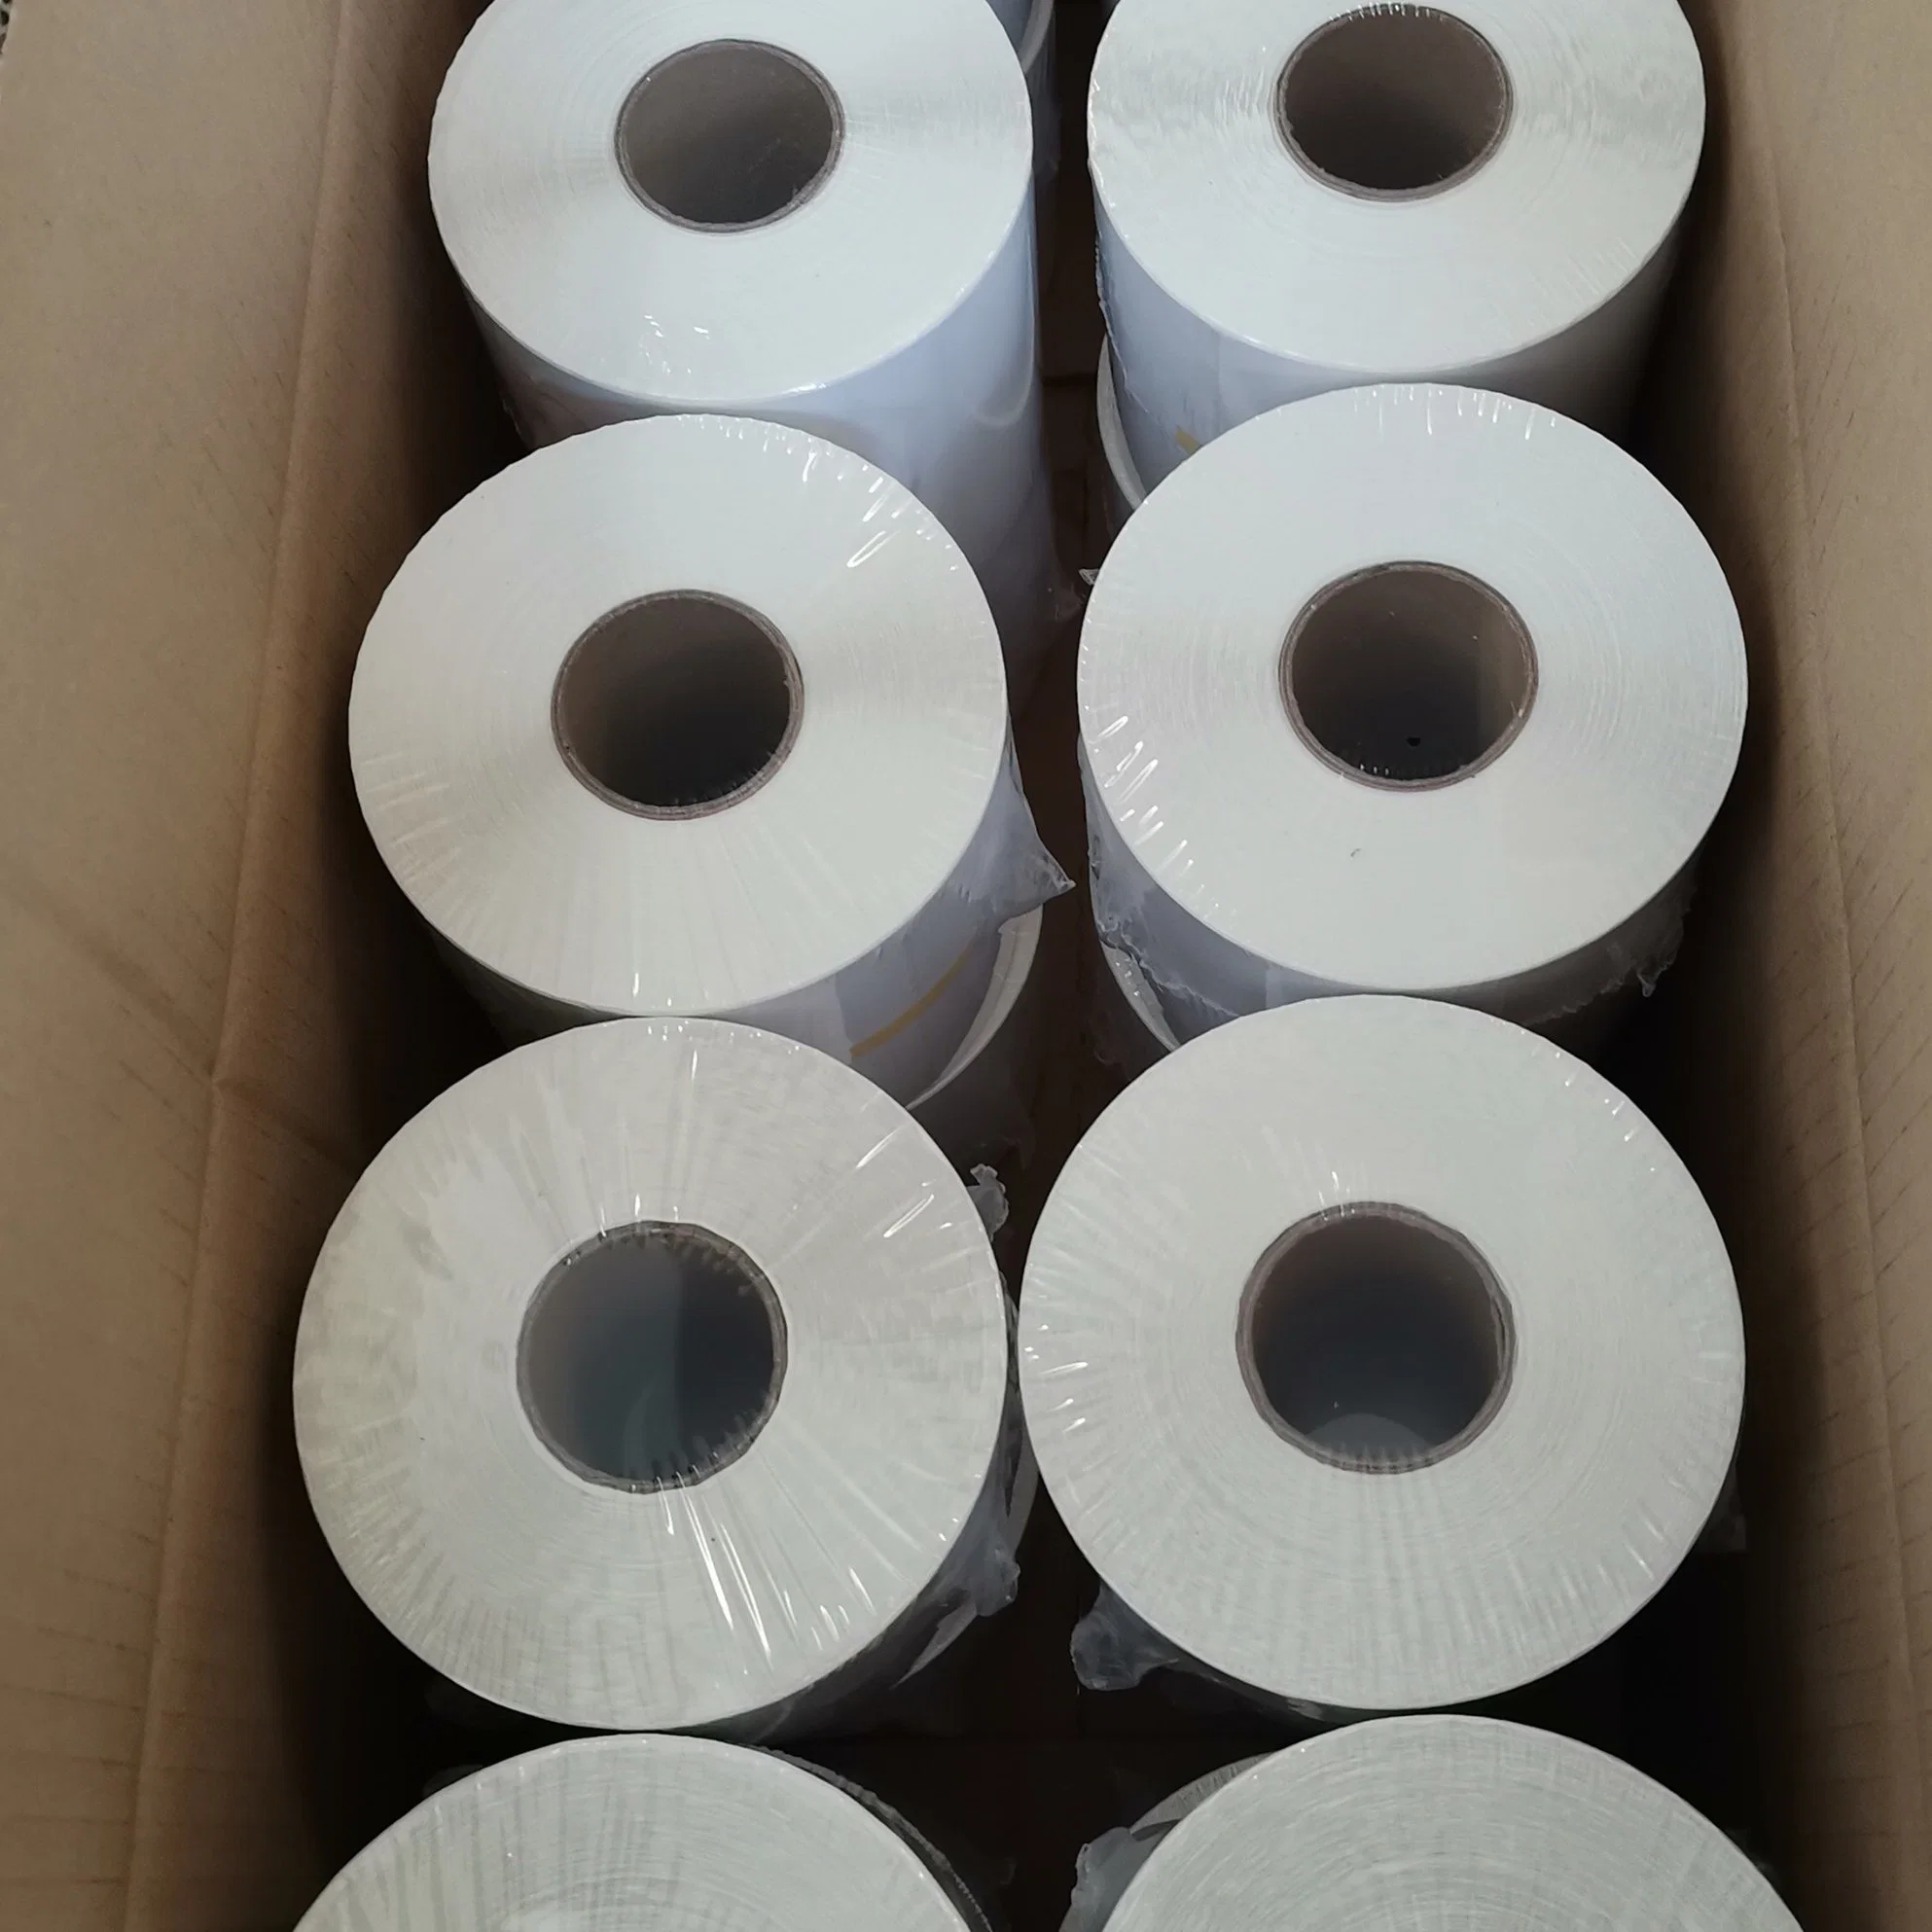 57 * 50mm Thermal Receipt Papier Kasse Thermal Paper Rolls Aufkleber Benutzerdefinierte Rolle